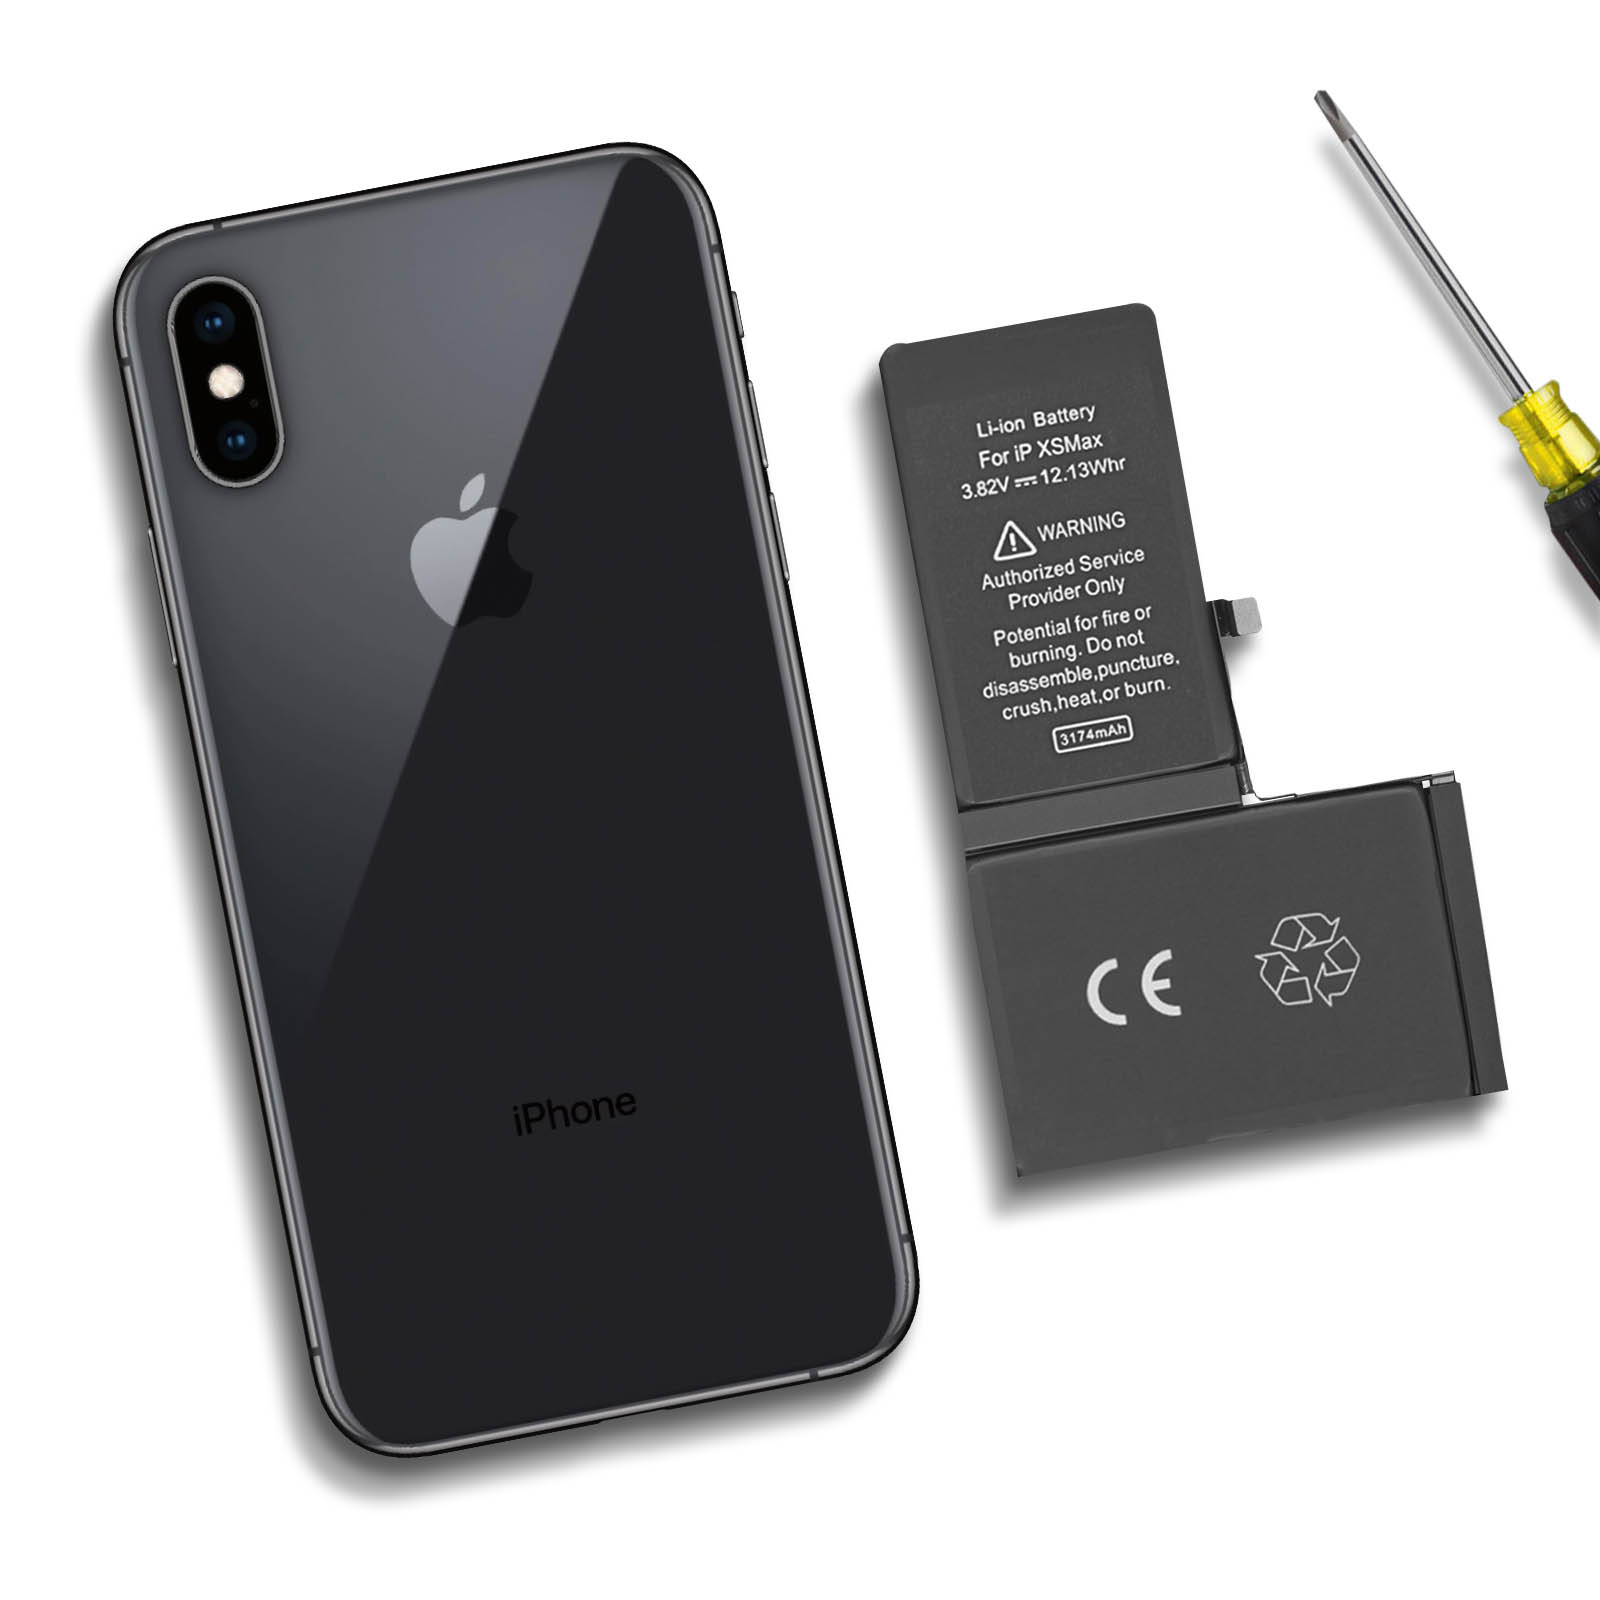 Batería iPhone XS Max 100% Compatible, Repuesto APN-616-00506, 3174mAh -  Spain